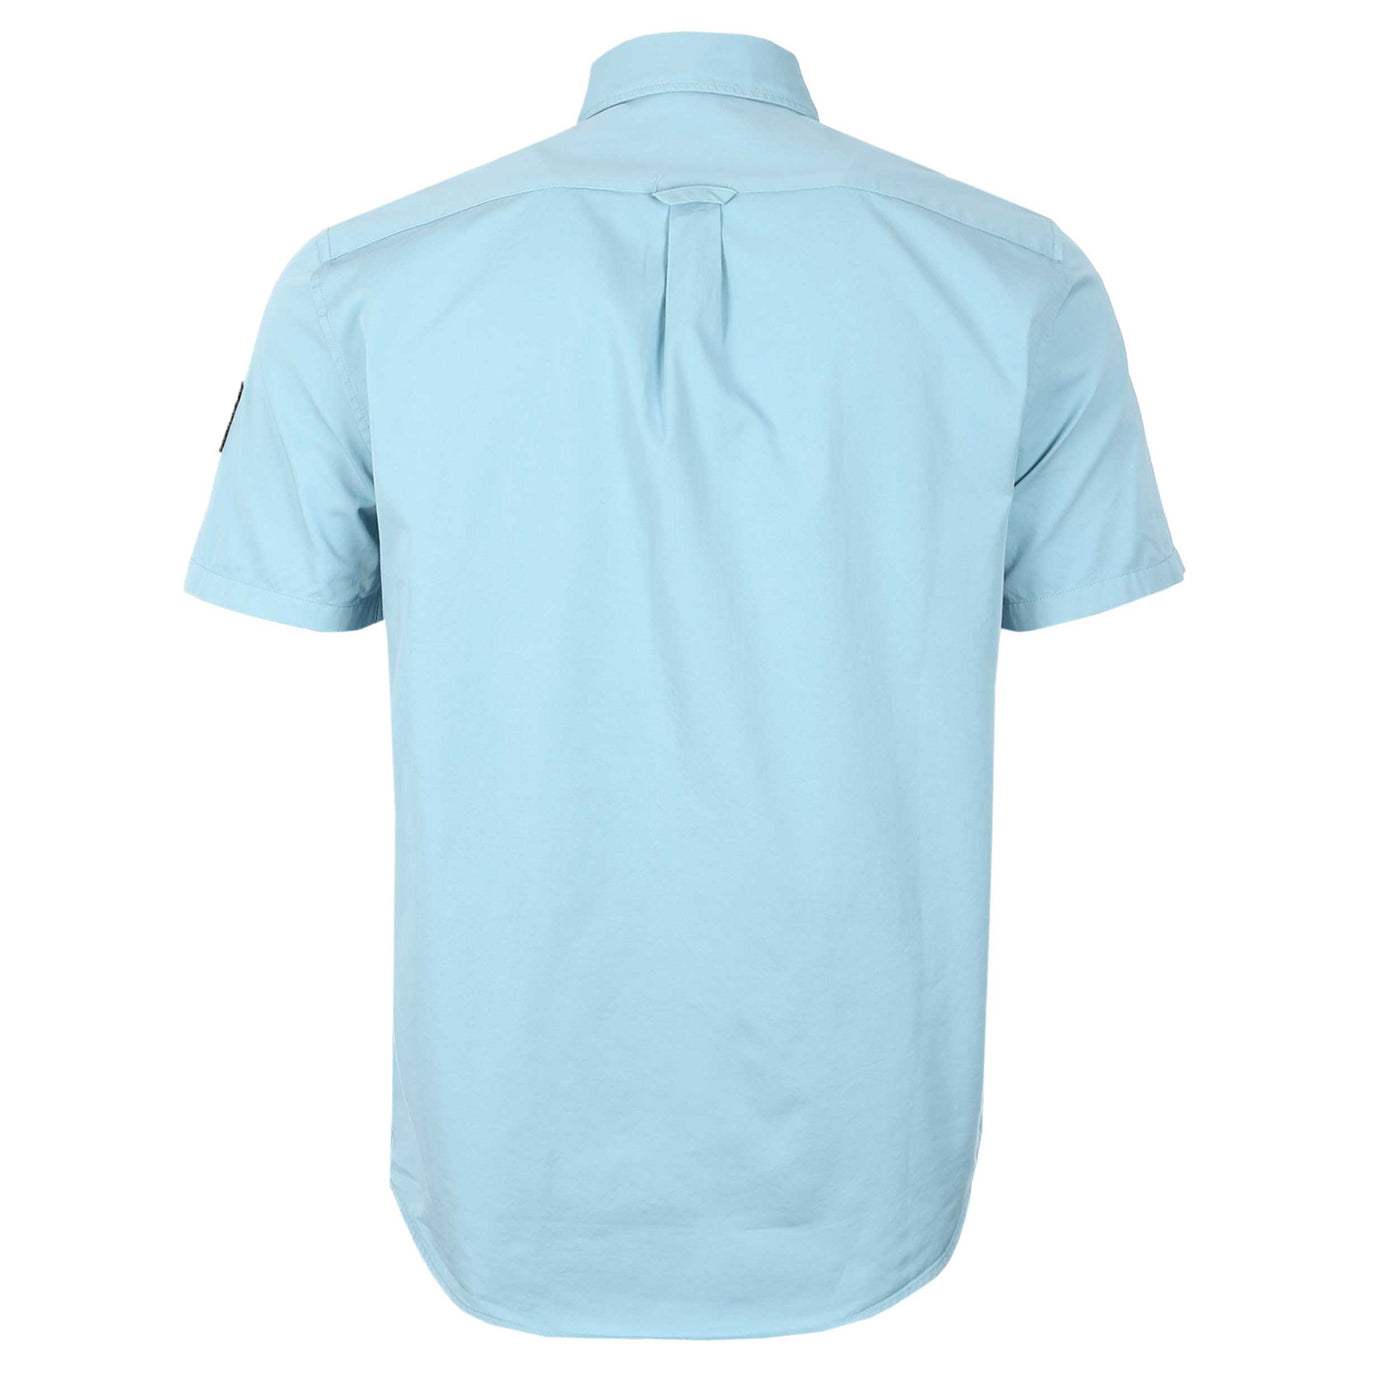 Belstaff Scale SS Shirt in Skyline Blue Back